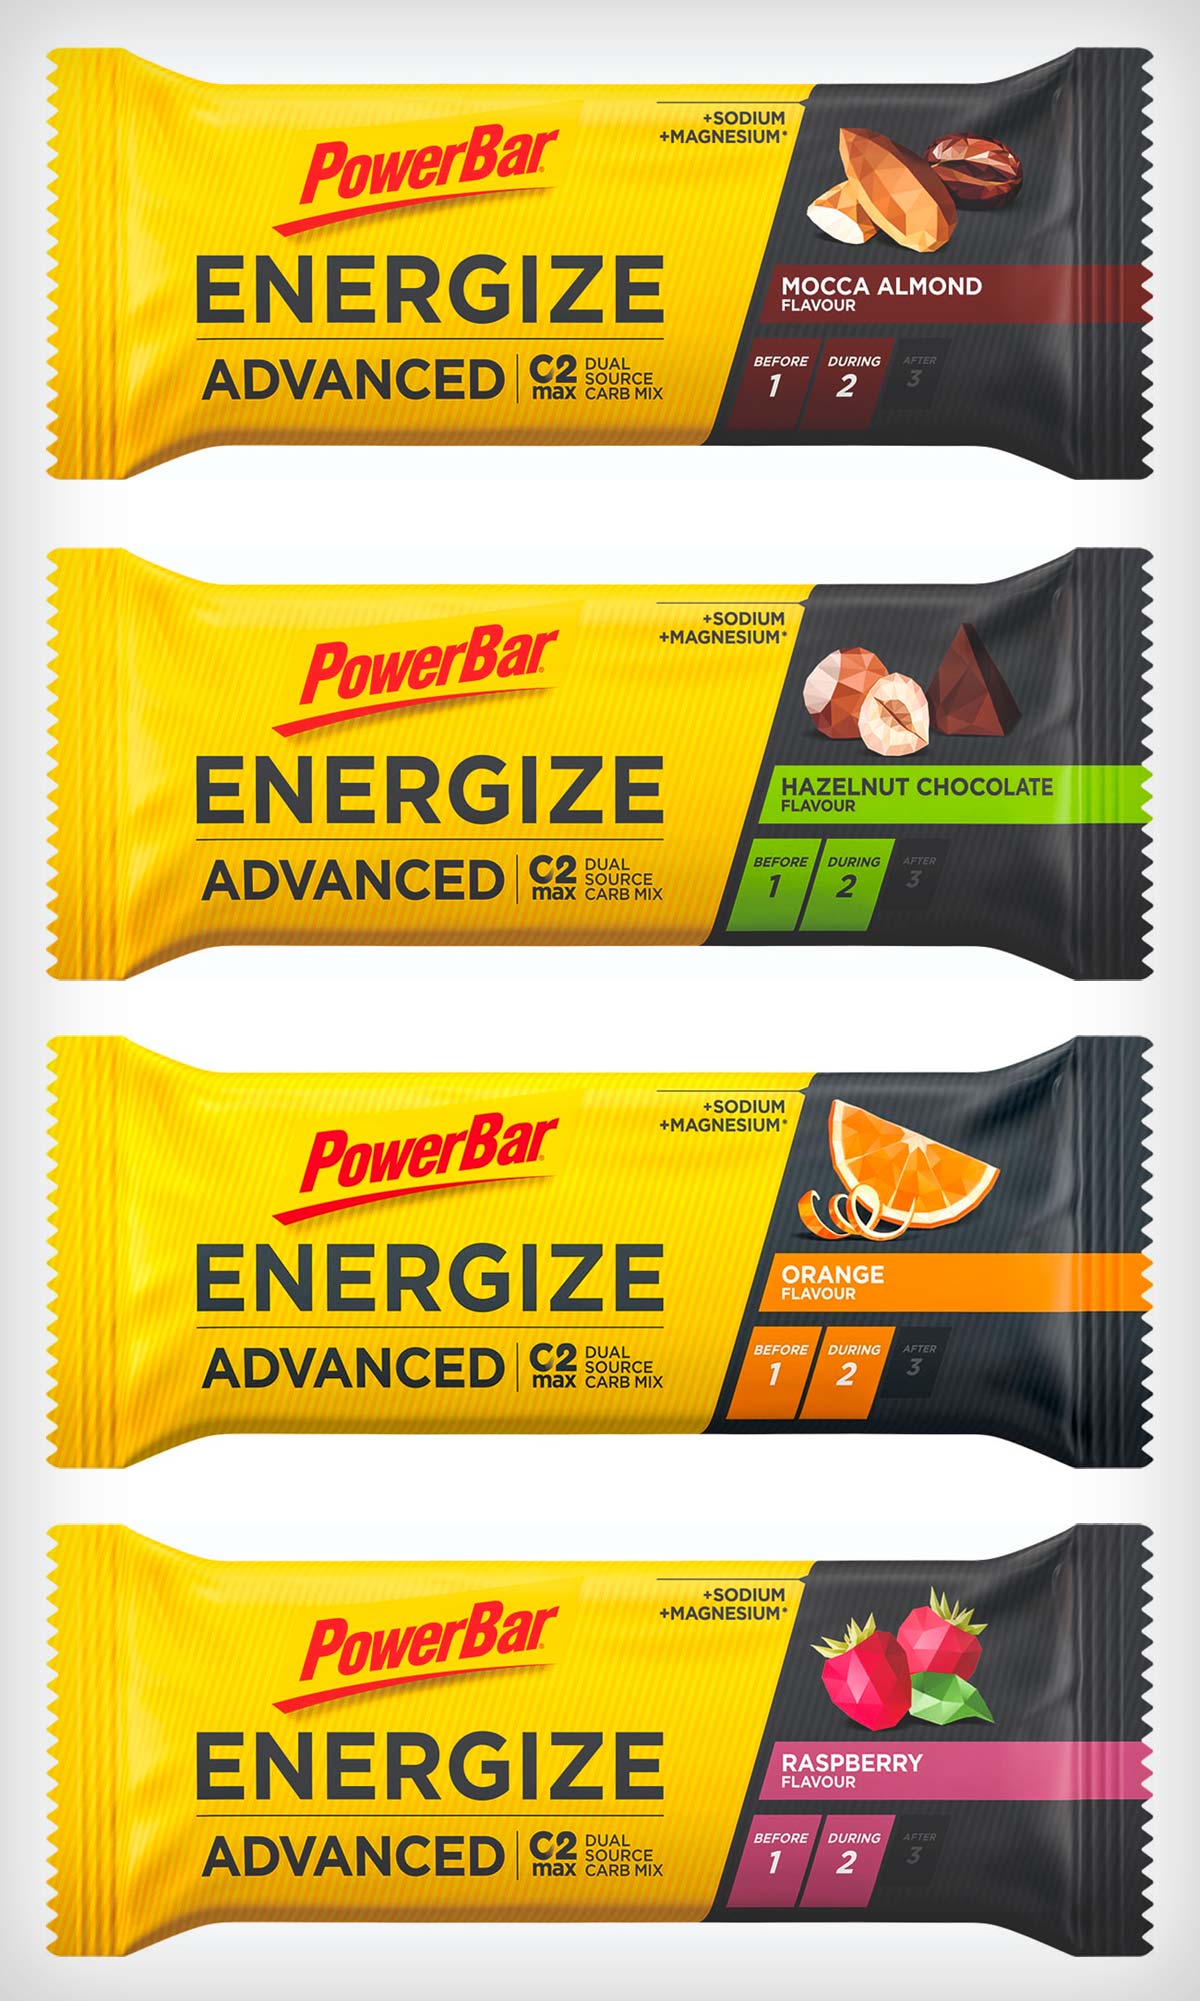 PowerBar Energize Advanced, la barrita energética original renueva su fórmula con mejor sabor y textura